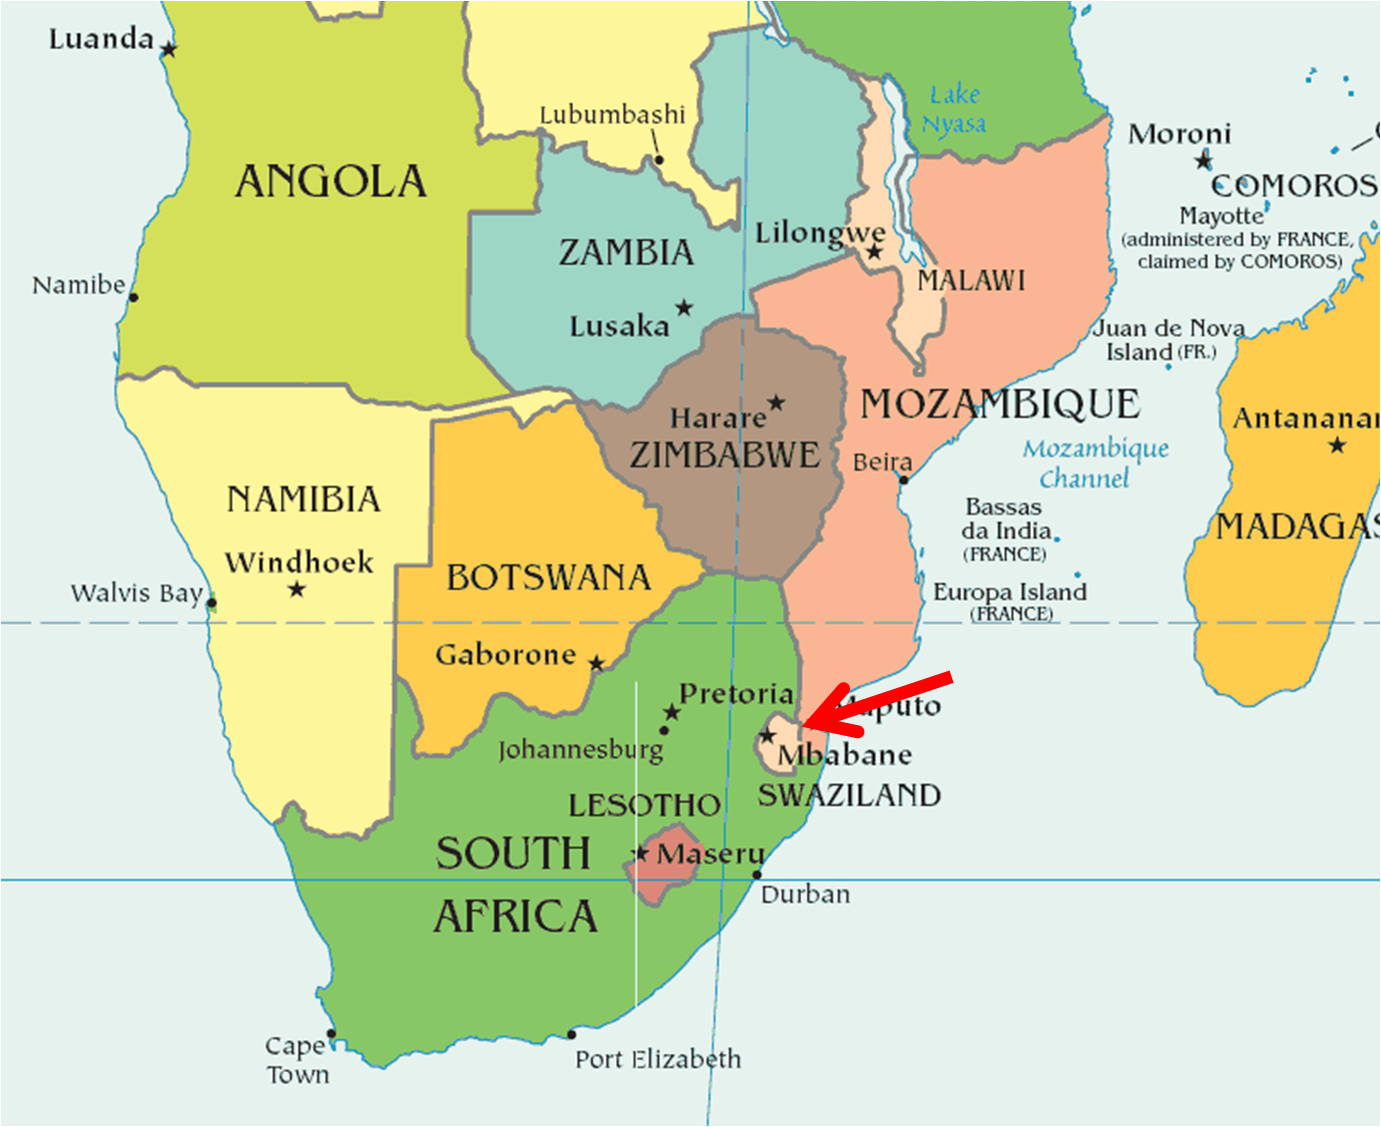 Blog de viajes: Viaje a Esuatini ( antigua Suazilandia), 1º parte. Consejos prácticos.